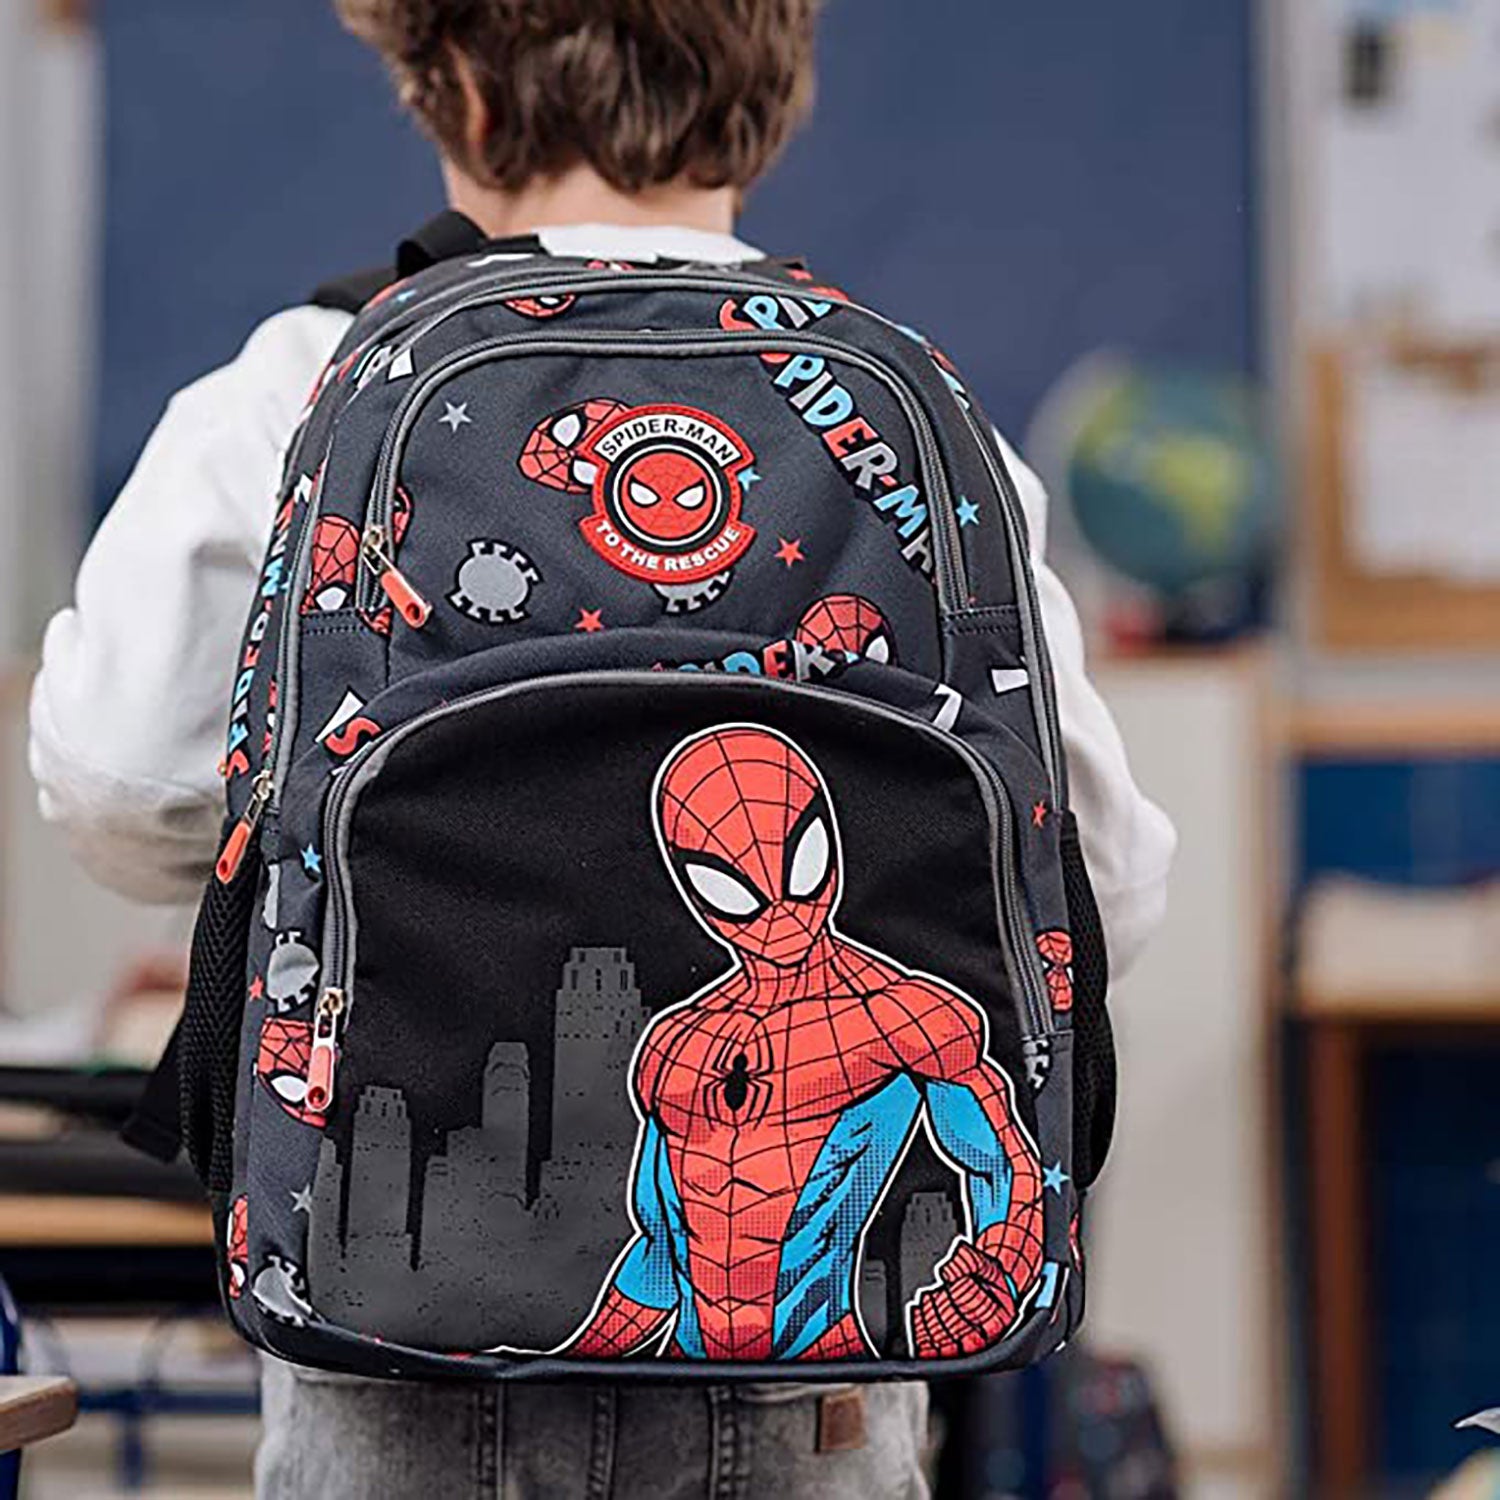 Zaino e astuccio Marvel Spiderman zainetto con bretelle bambino scuola 5546